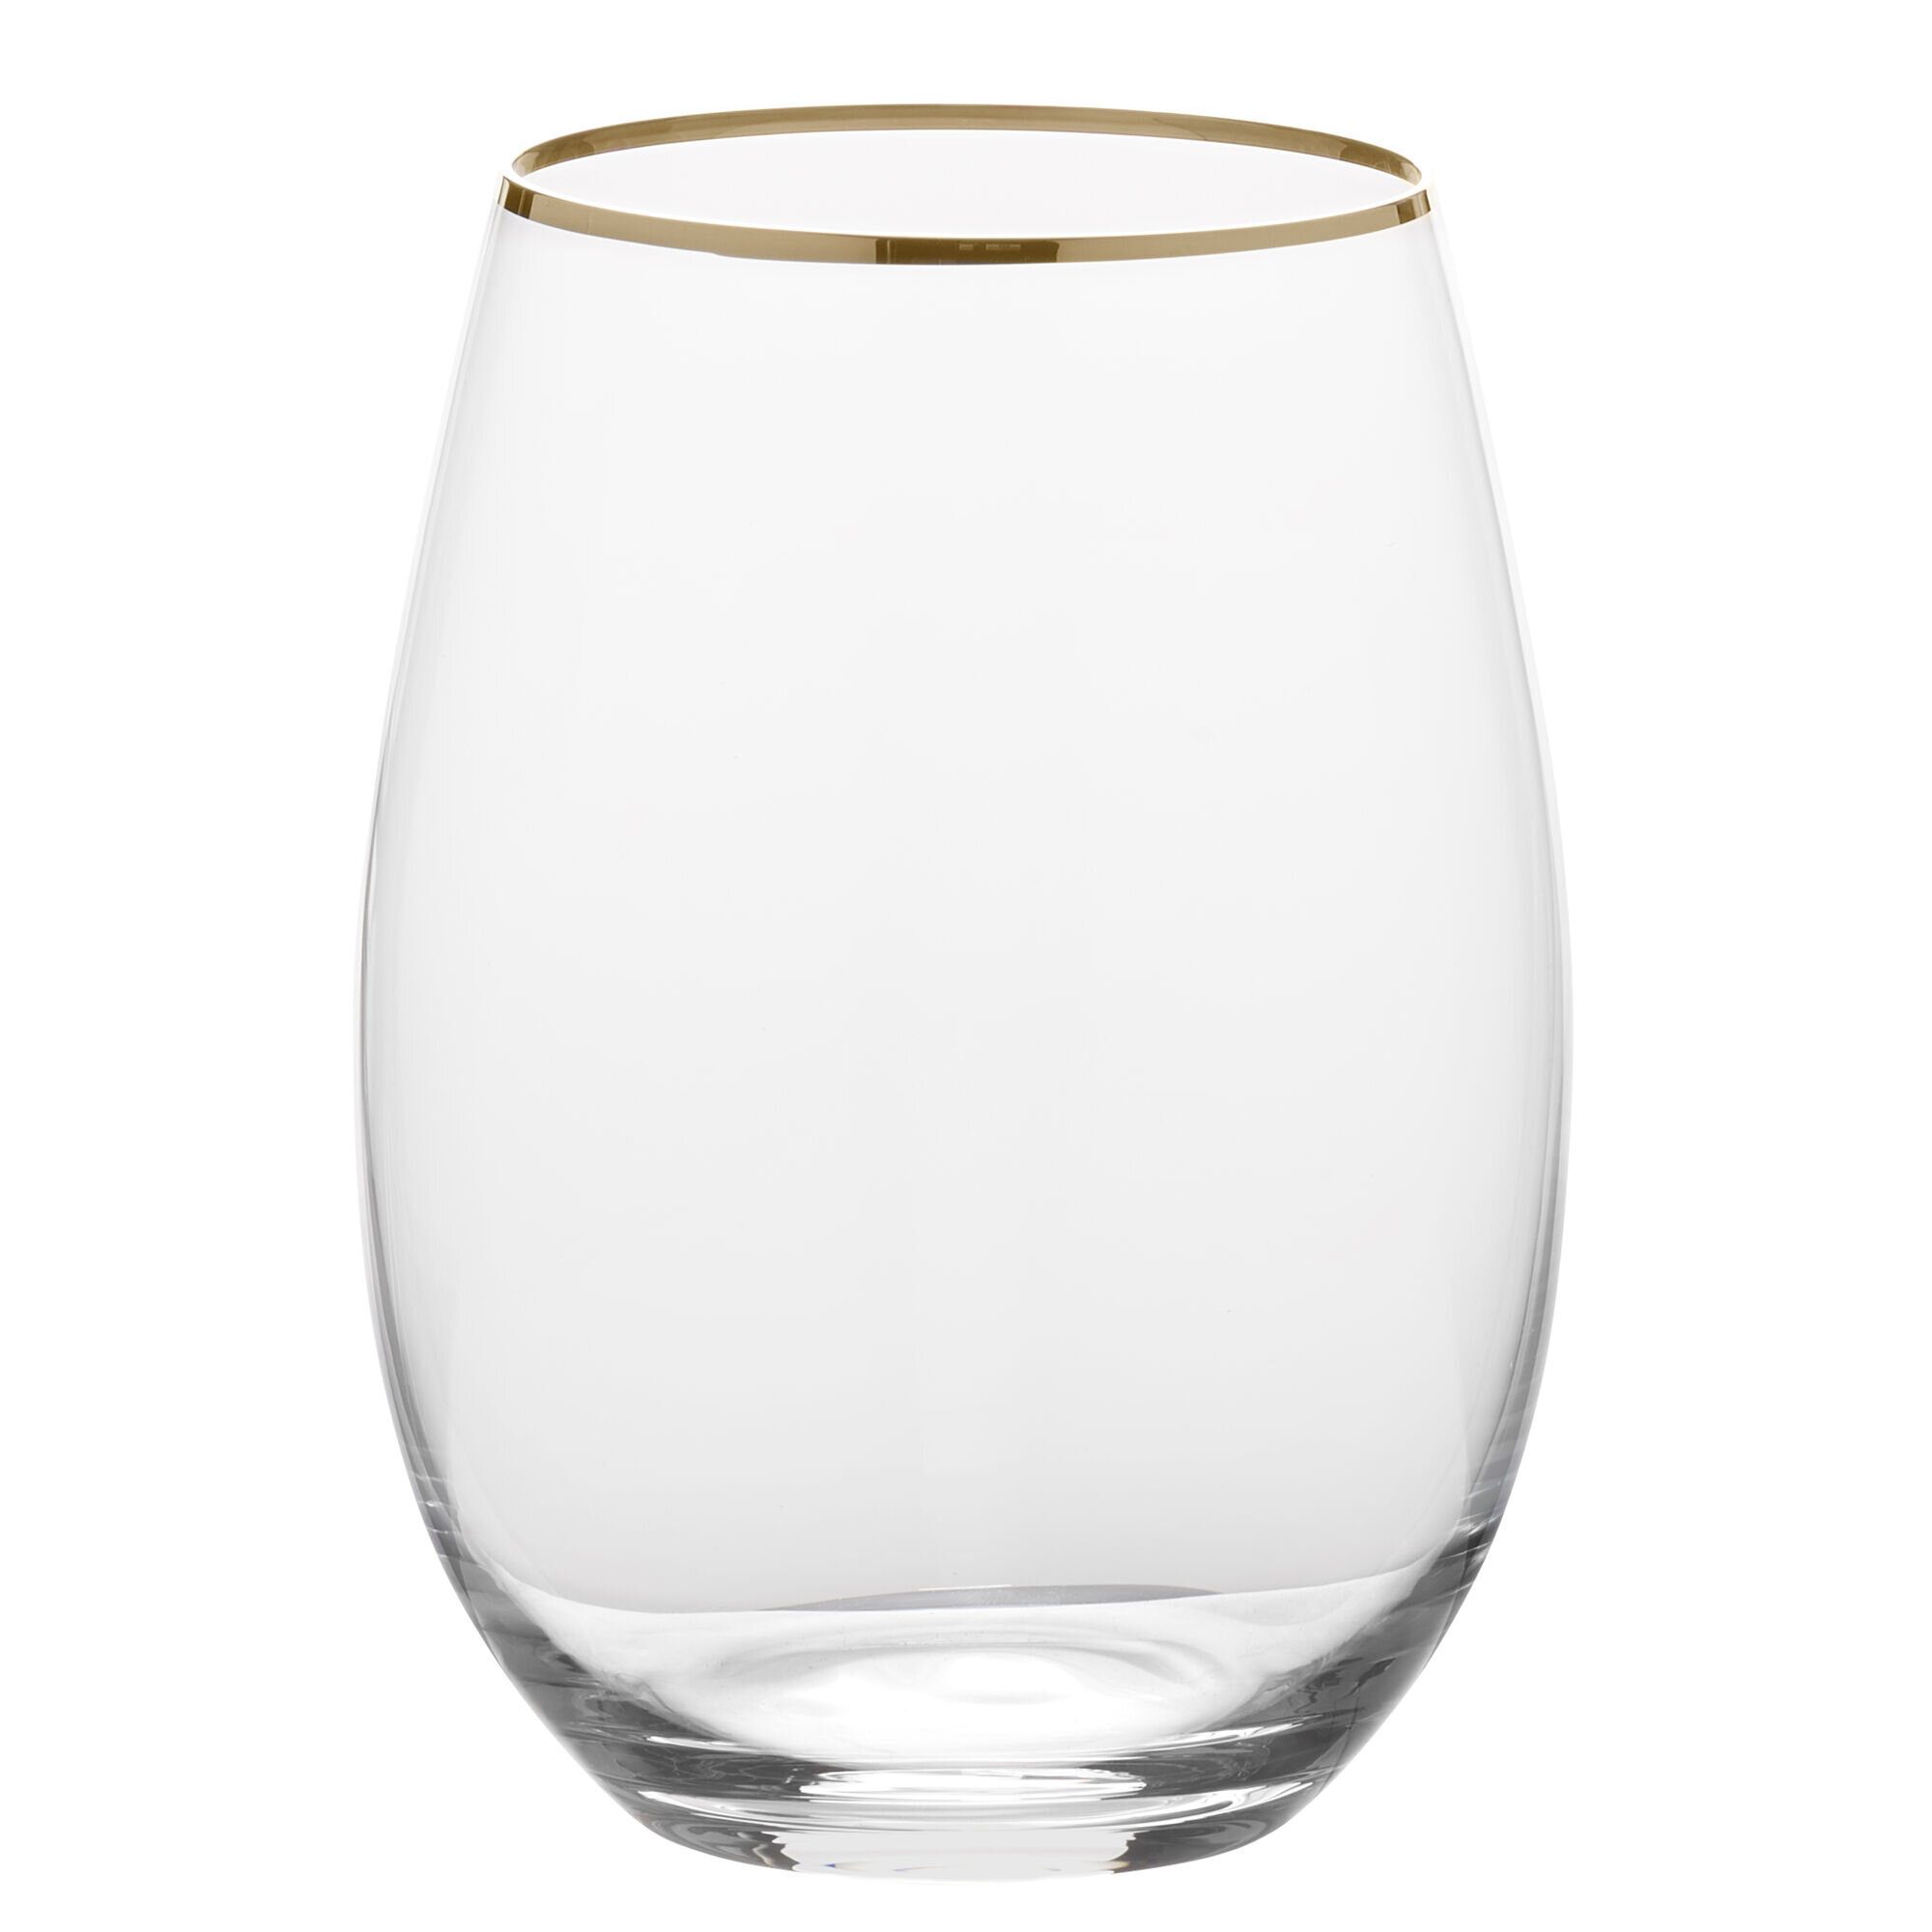 https://assets.wfcdn.com/im/51179097/compr-r85/1896/189613063/mikasa-julie-gold-stemless-wine-glasses-1975-ounce.jpg